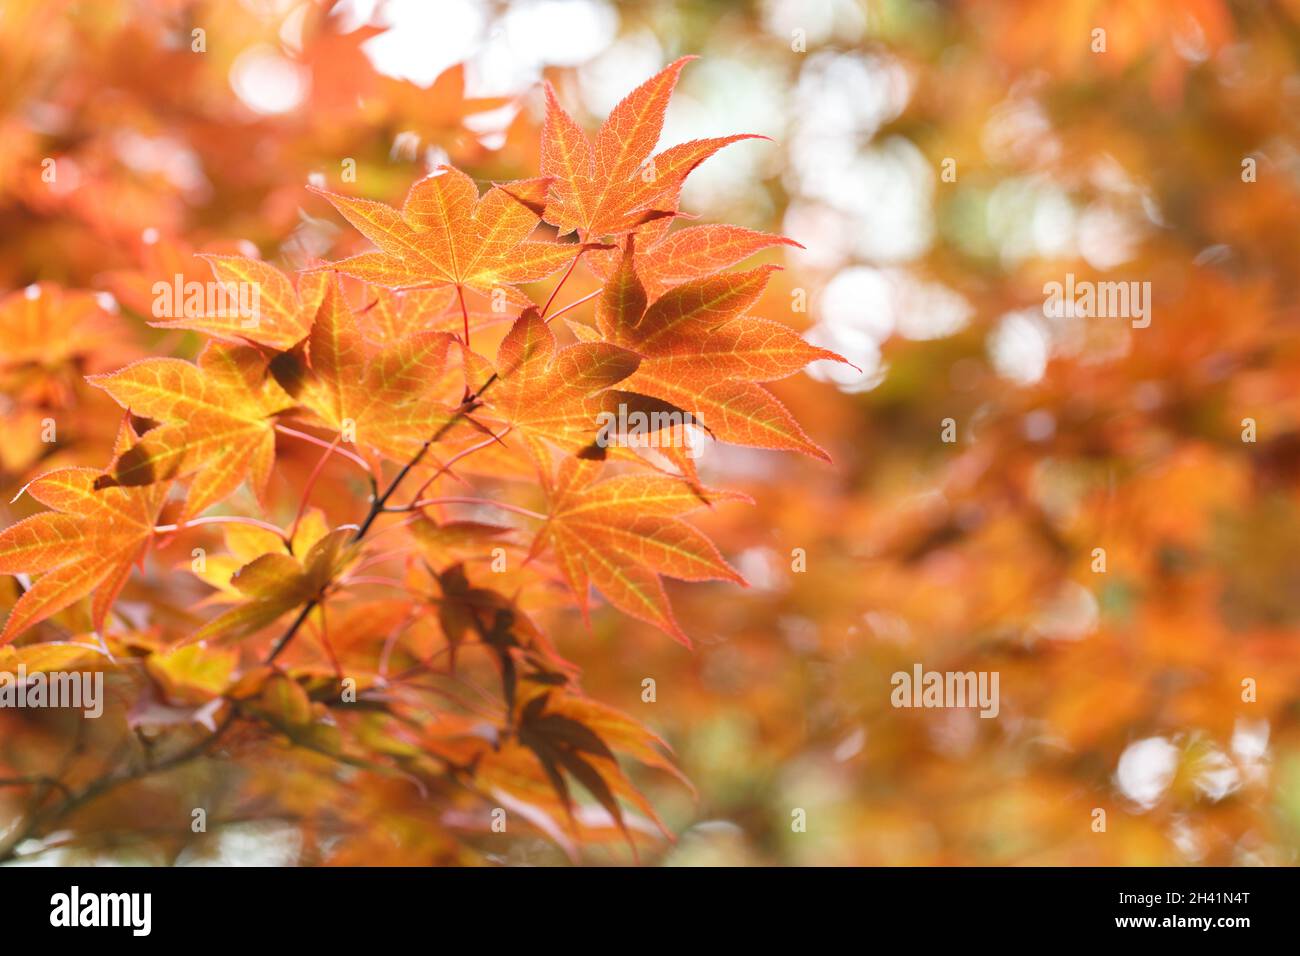 Japanese maple tree leaves background Stock Photo